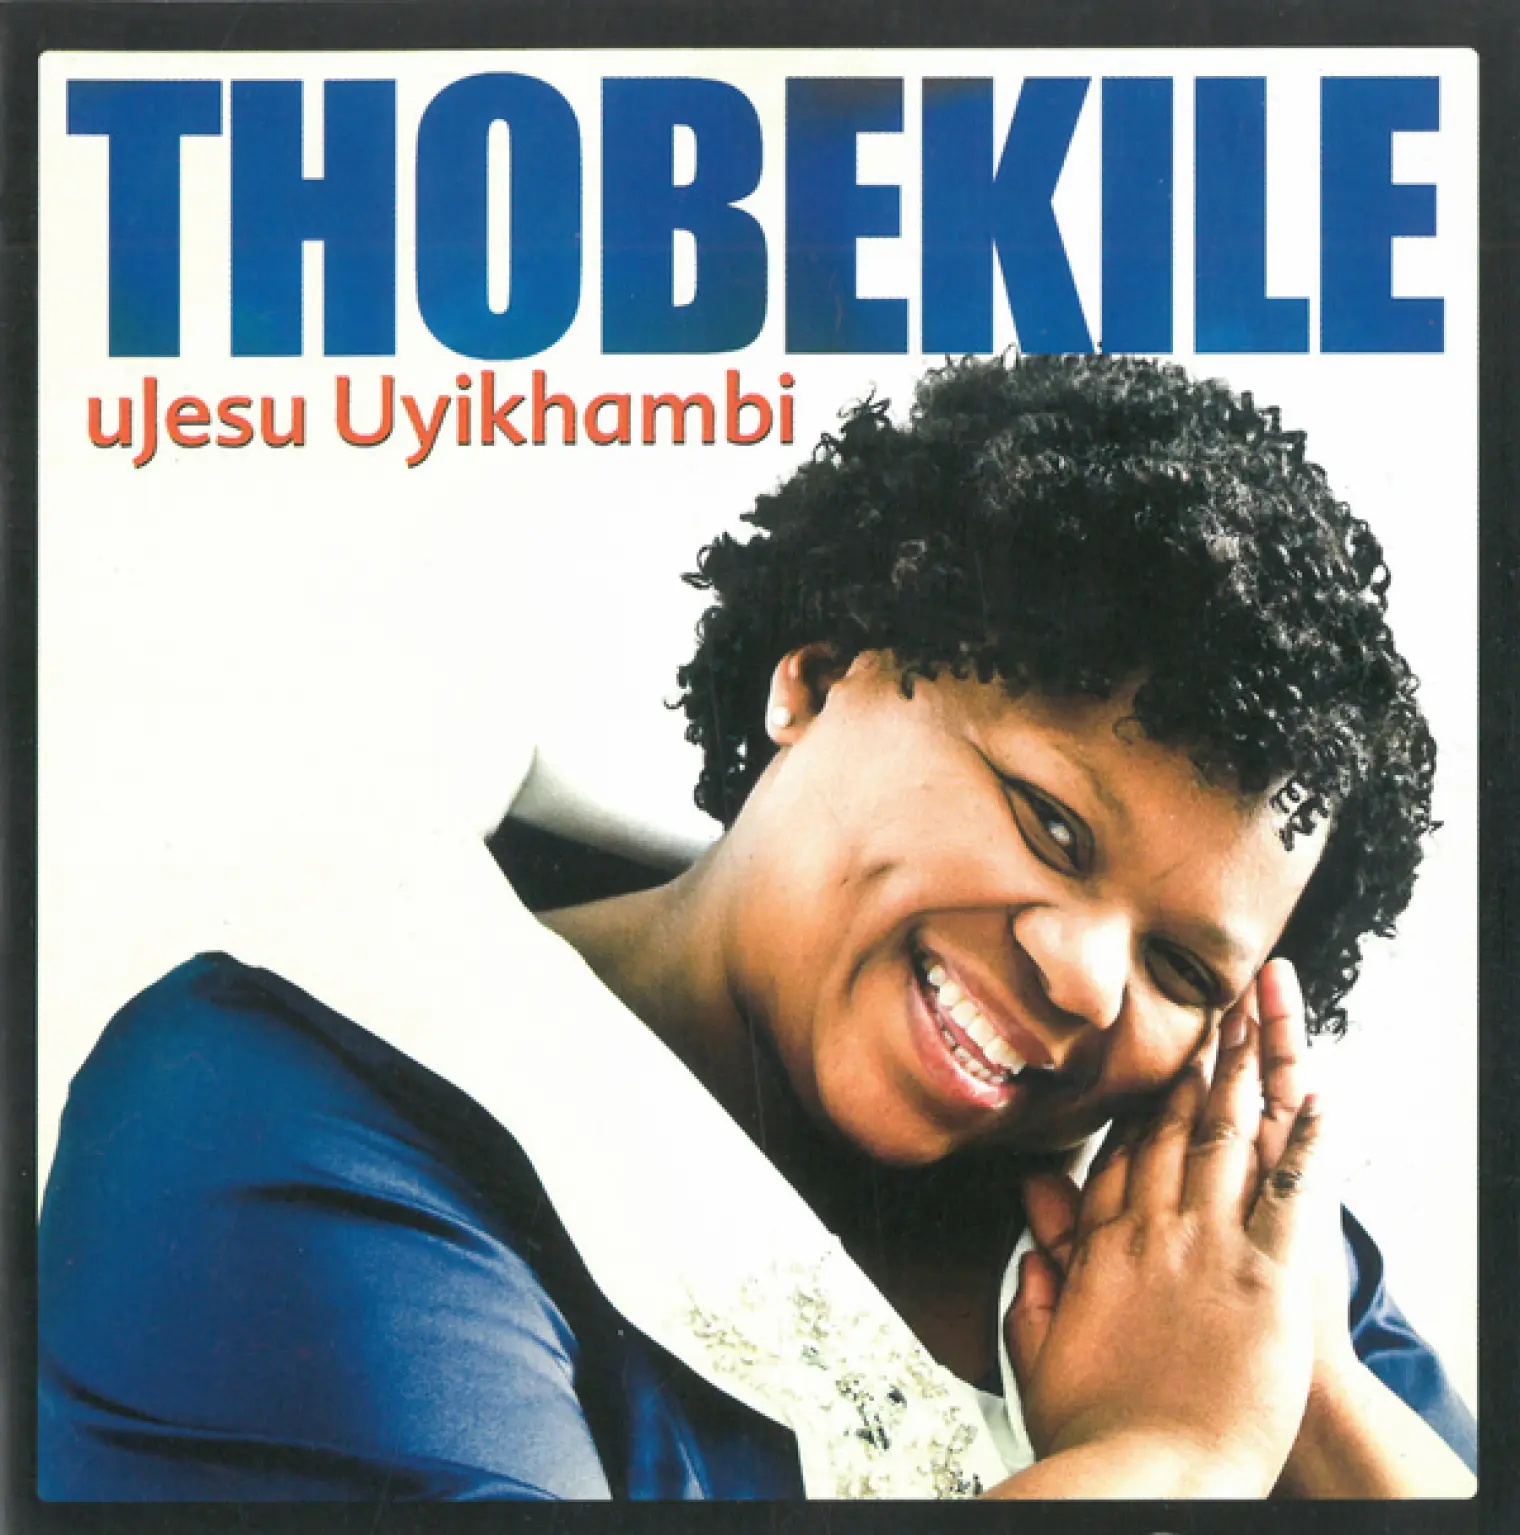 uJesu Uyikhambi -  Thobekile 